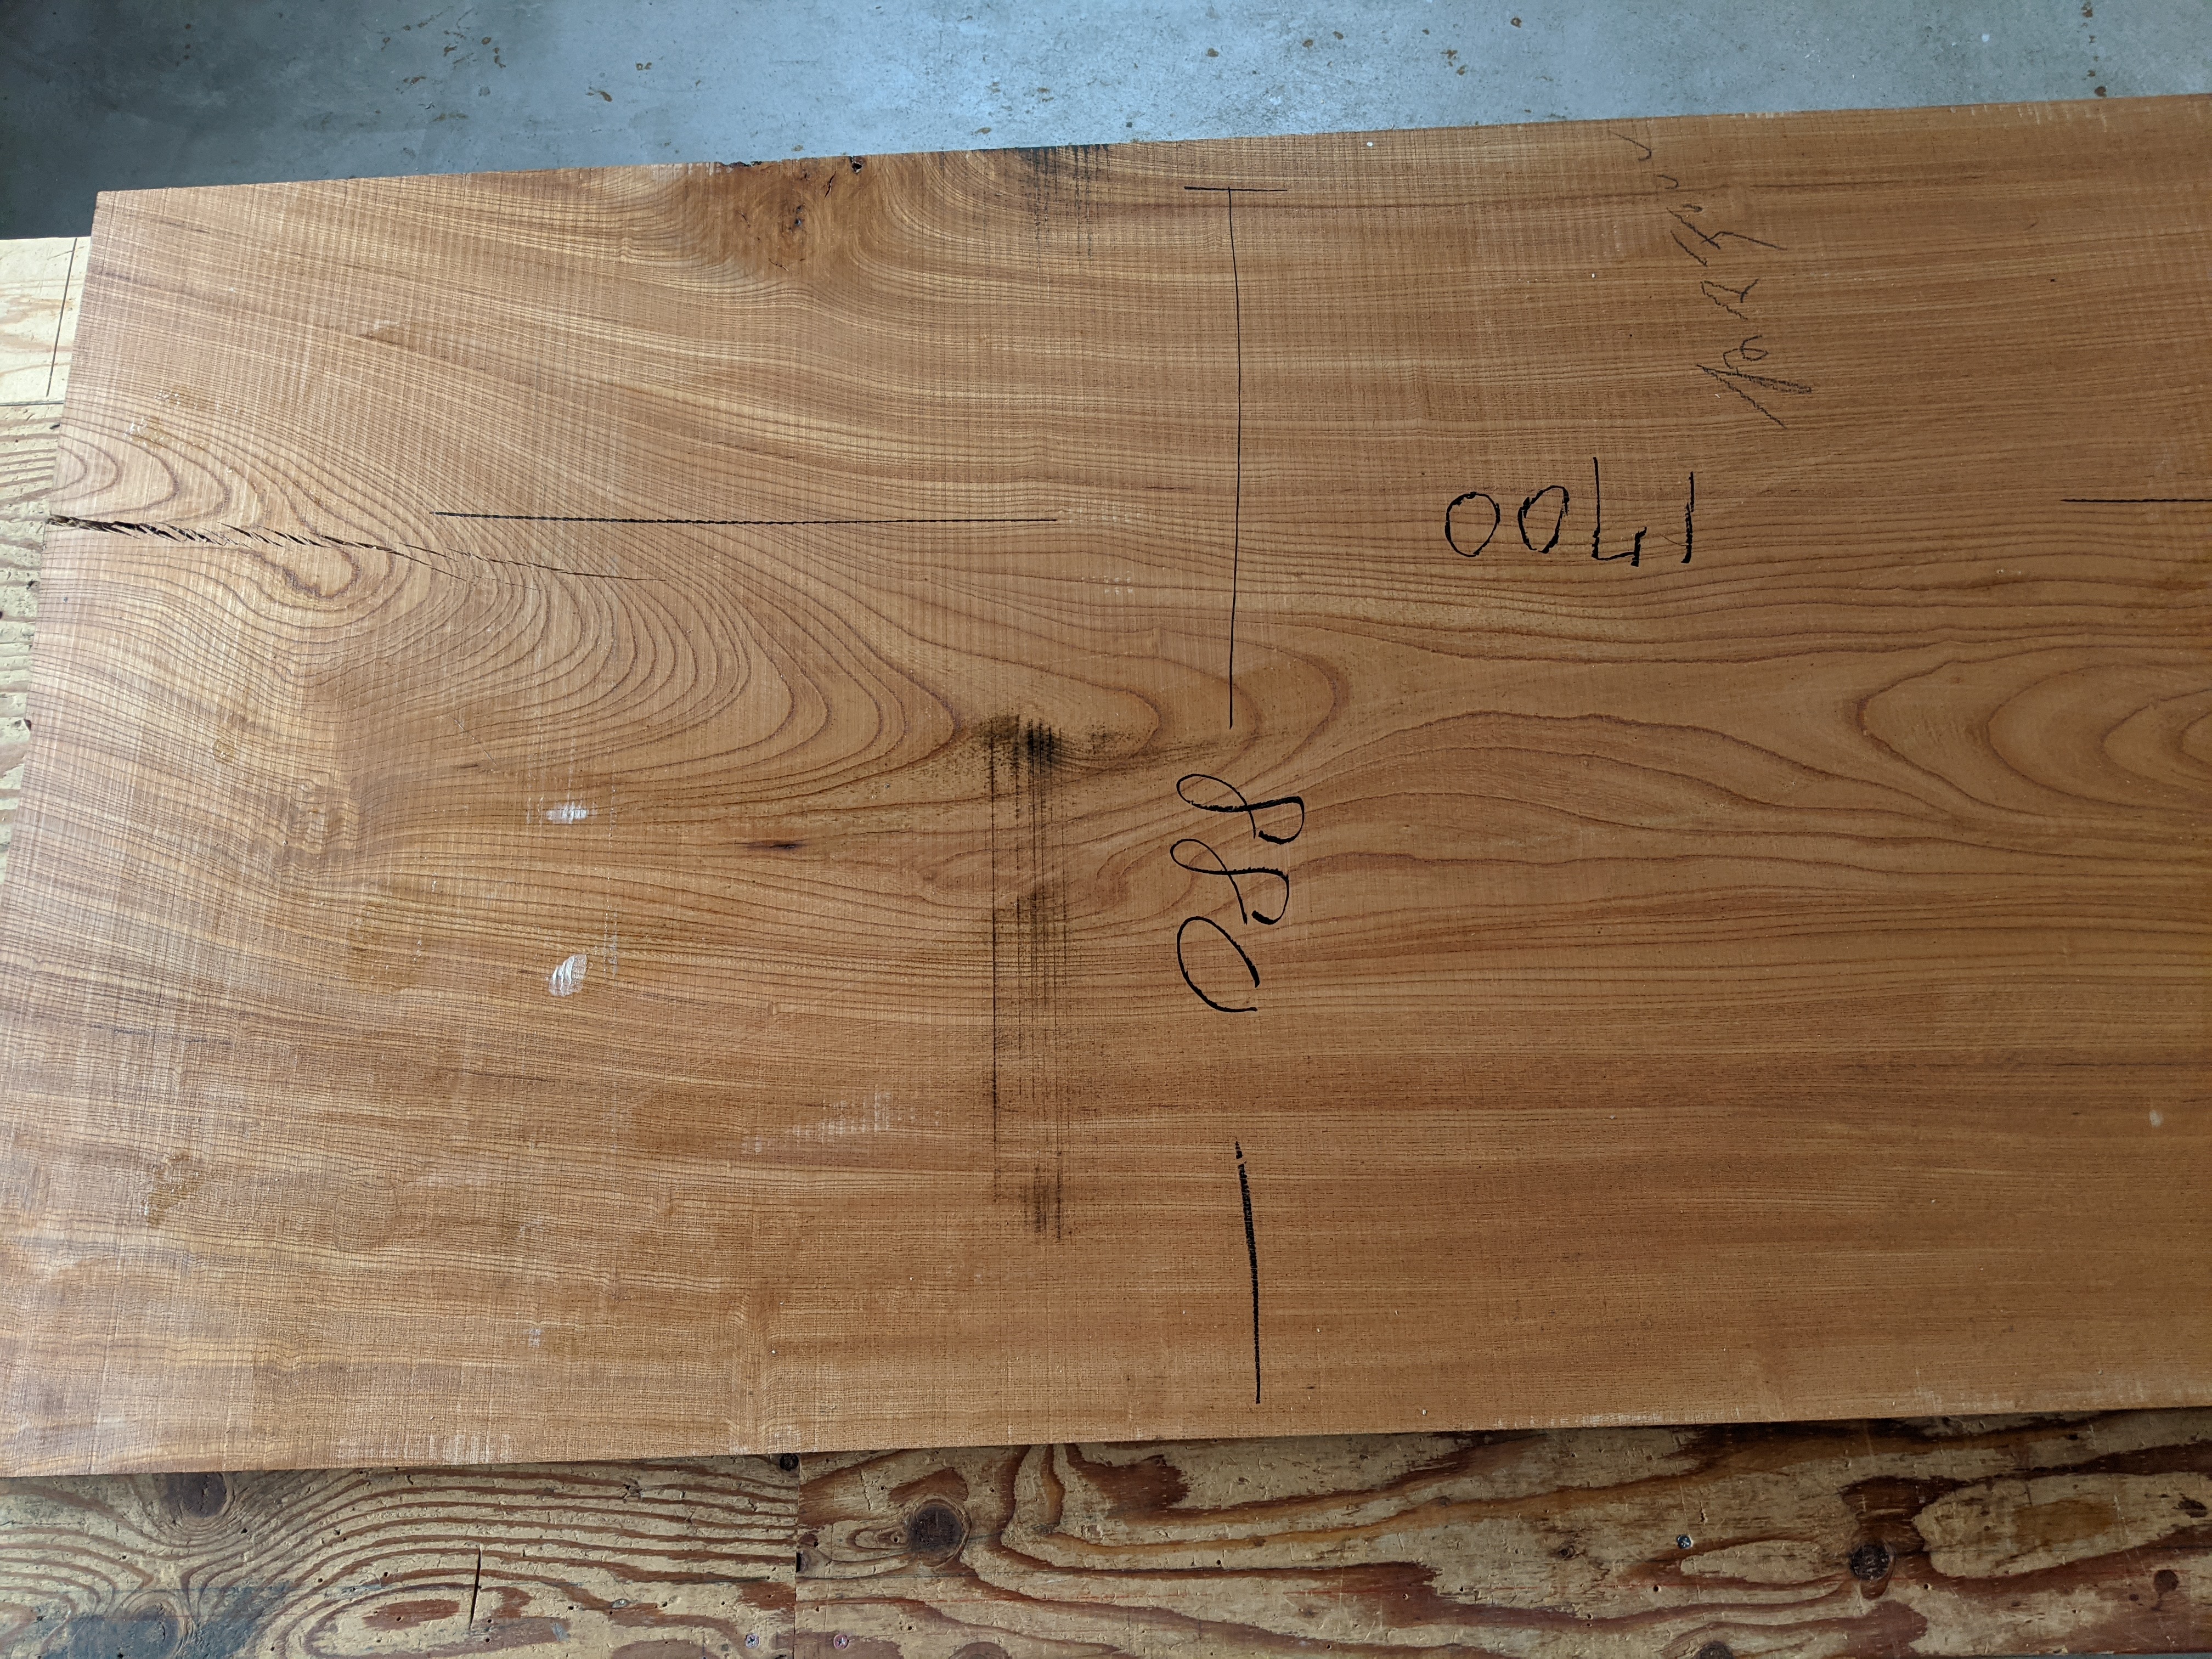 欅の無垢板テーブル製作|リソーケンセツのブログ春日部市の工務店